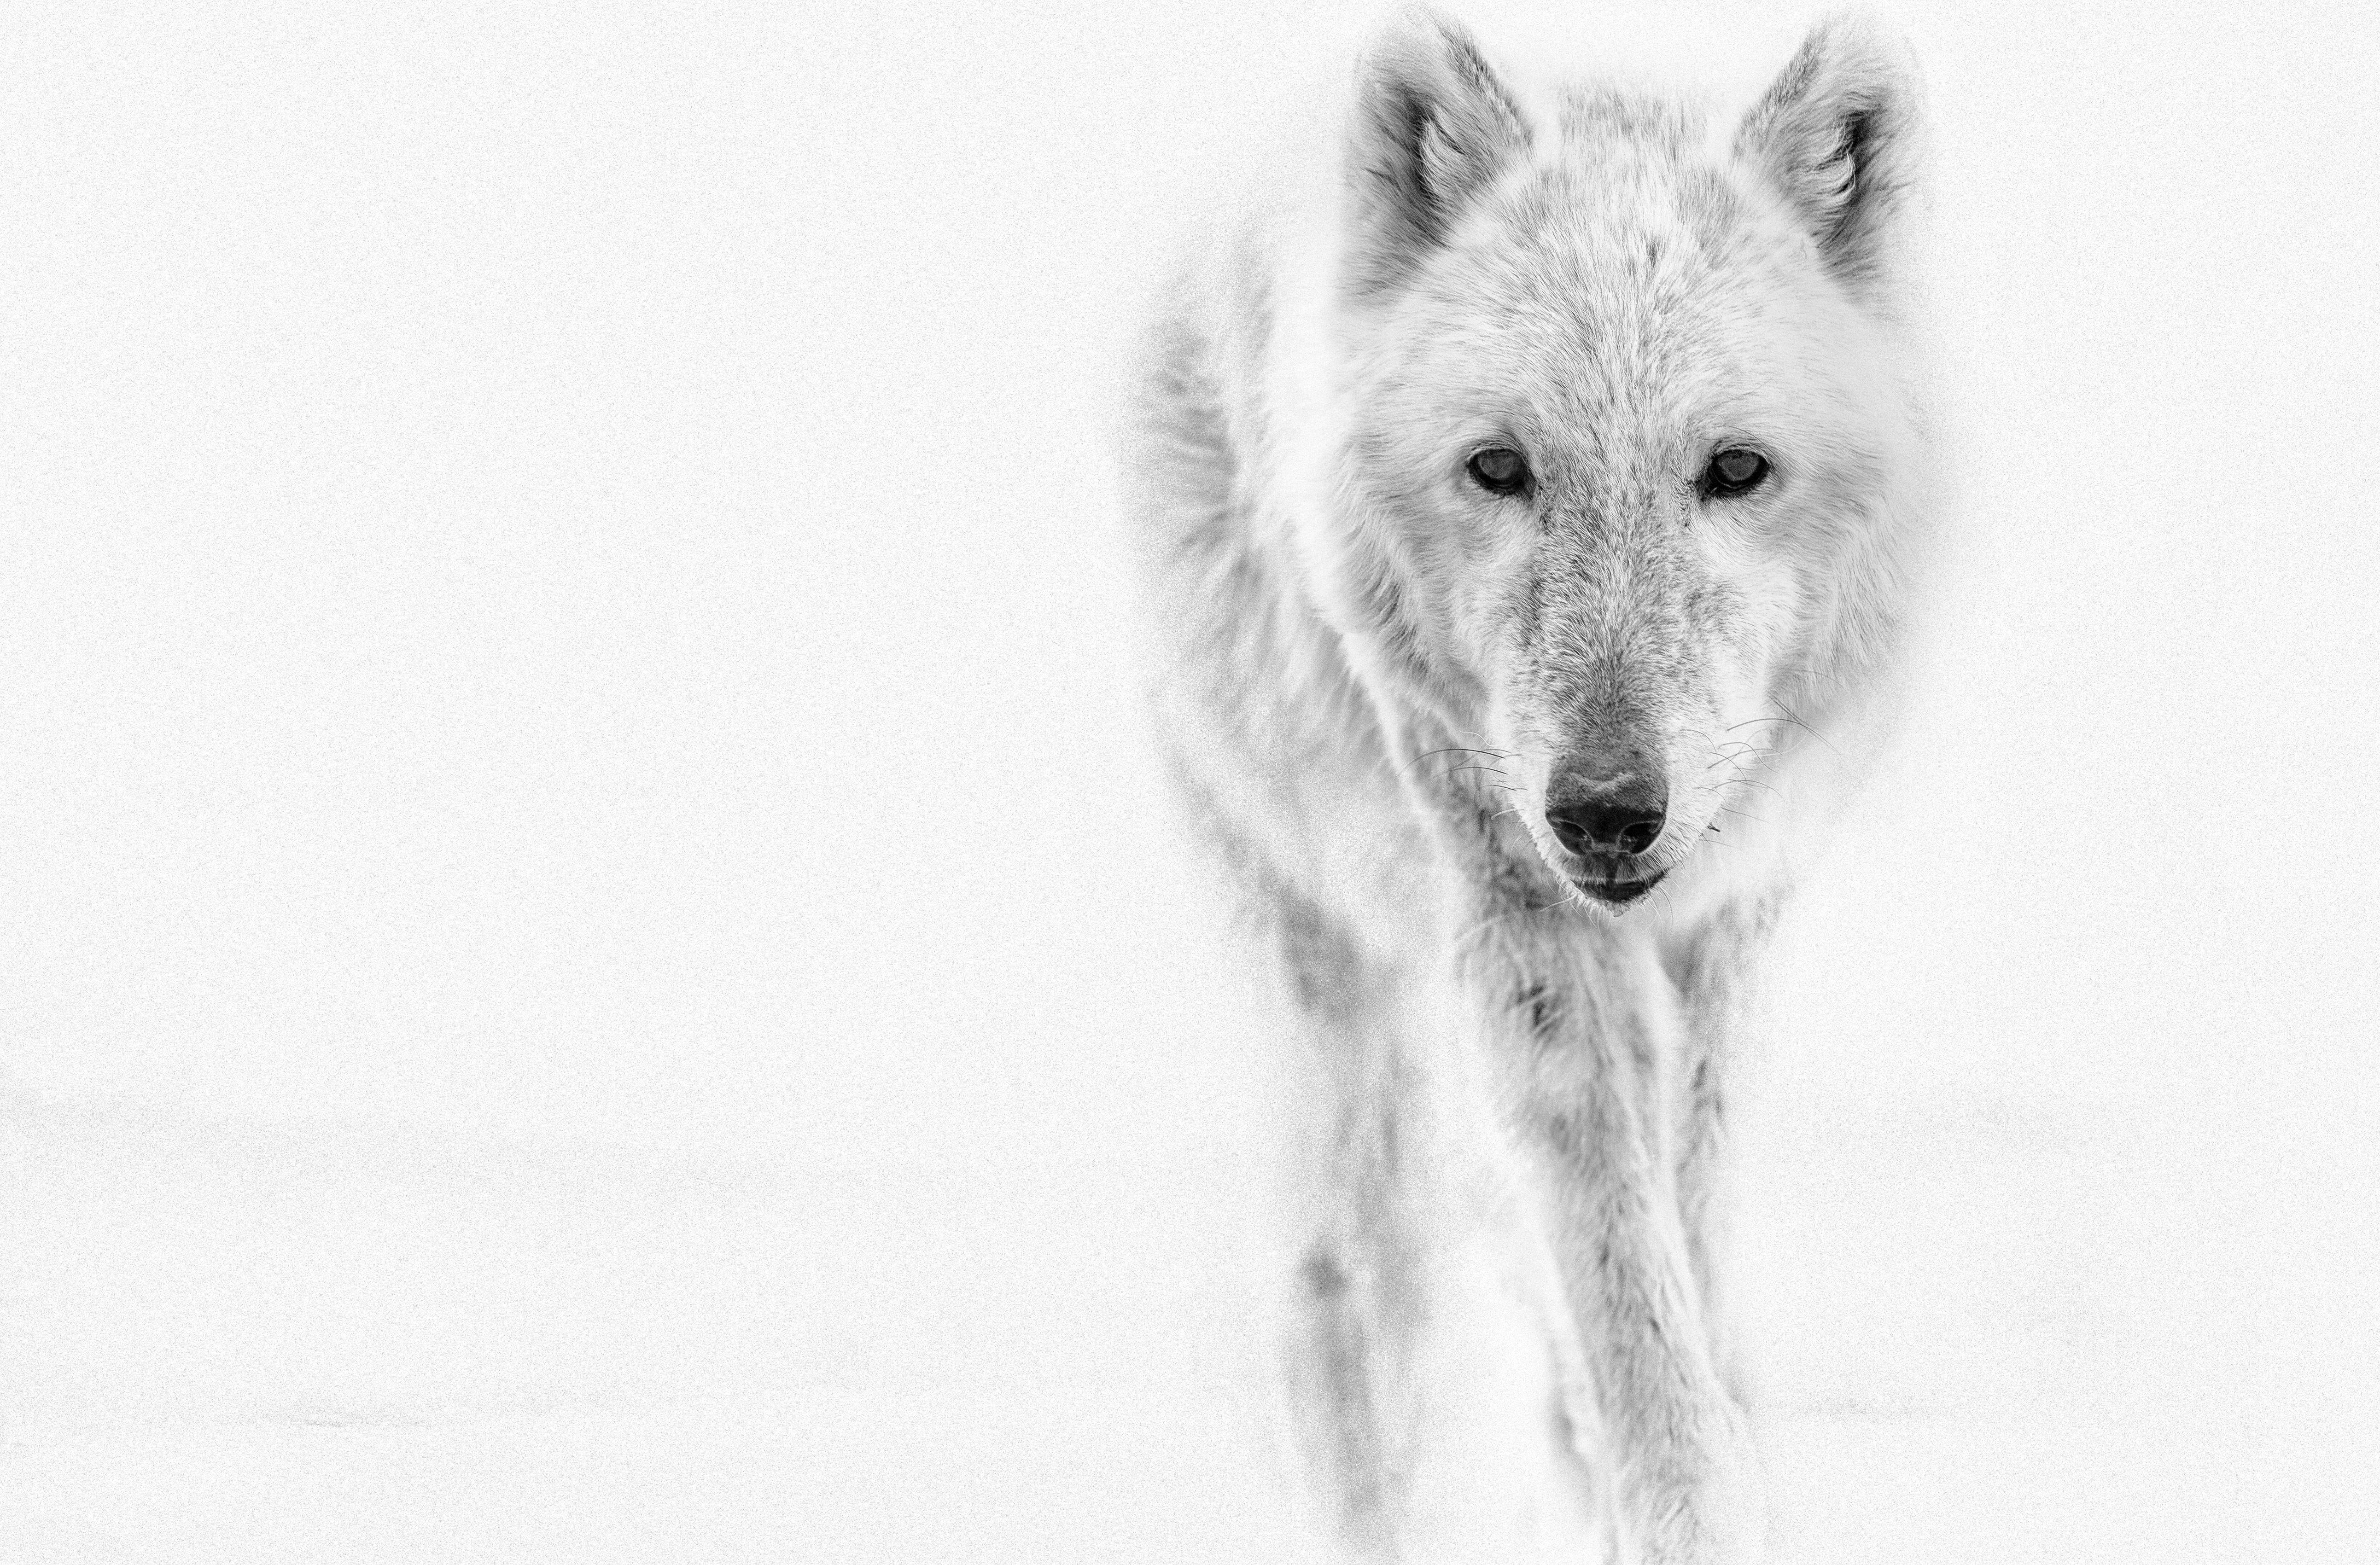 Animal Print Shane Russeck - Photographie du loup arctique 36x48  Photographie en noir et blanc, impression d'art Wolves